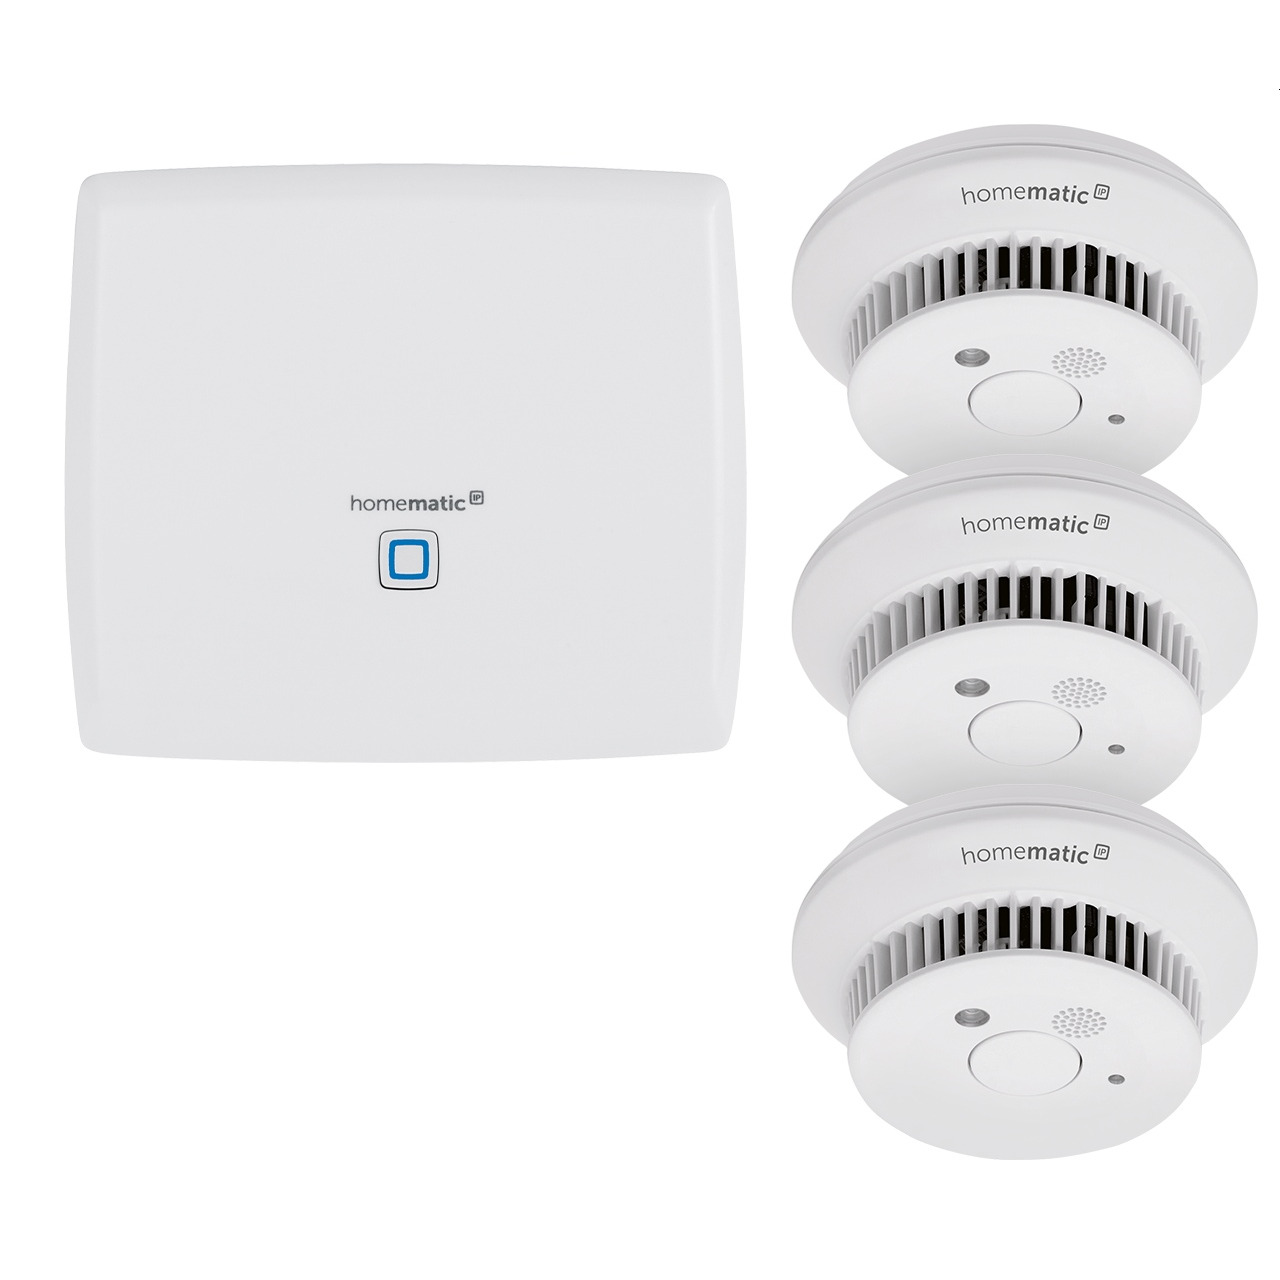 Homematic IP Set mit Smart Home Zentrale CCU3 und 3x Rauchwarnmelder HmIP-SWSD unter Hausautomation